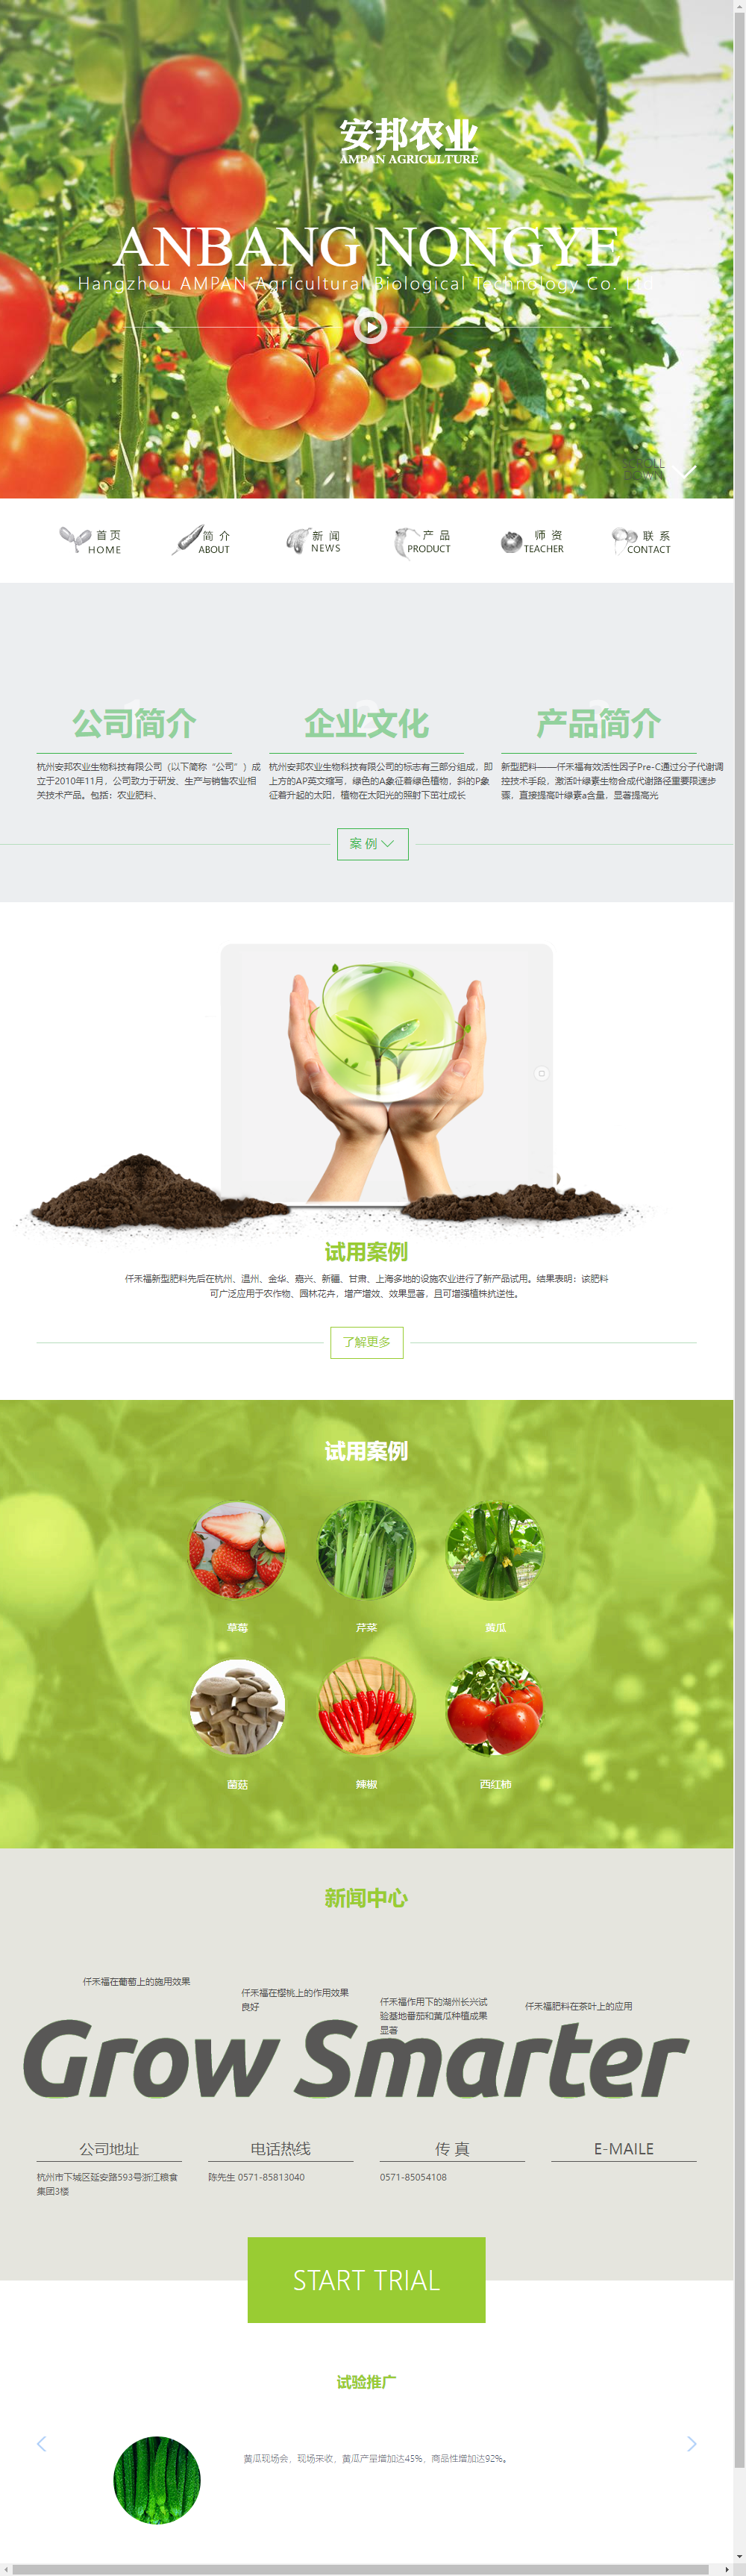 杭州安邦农业生物科技有限公司网站案例